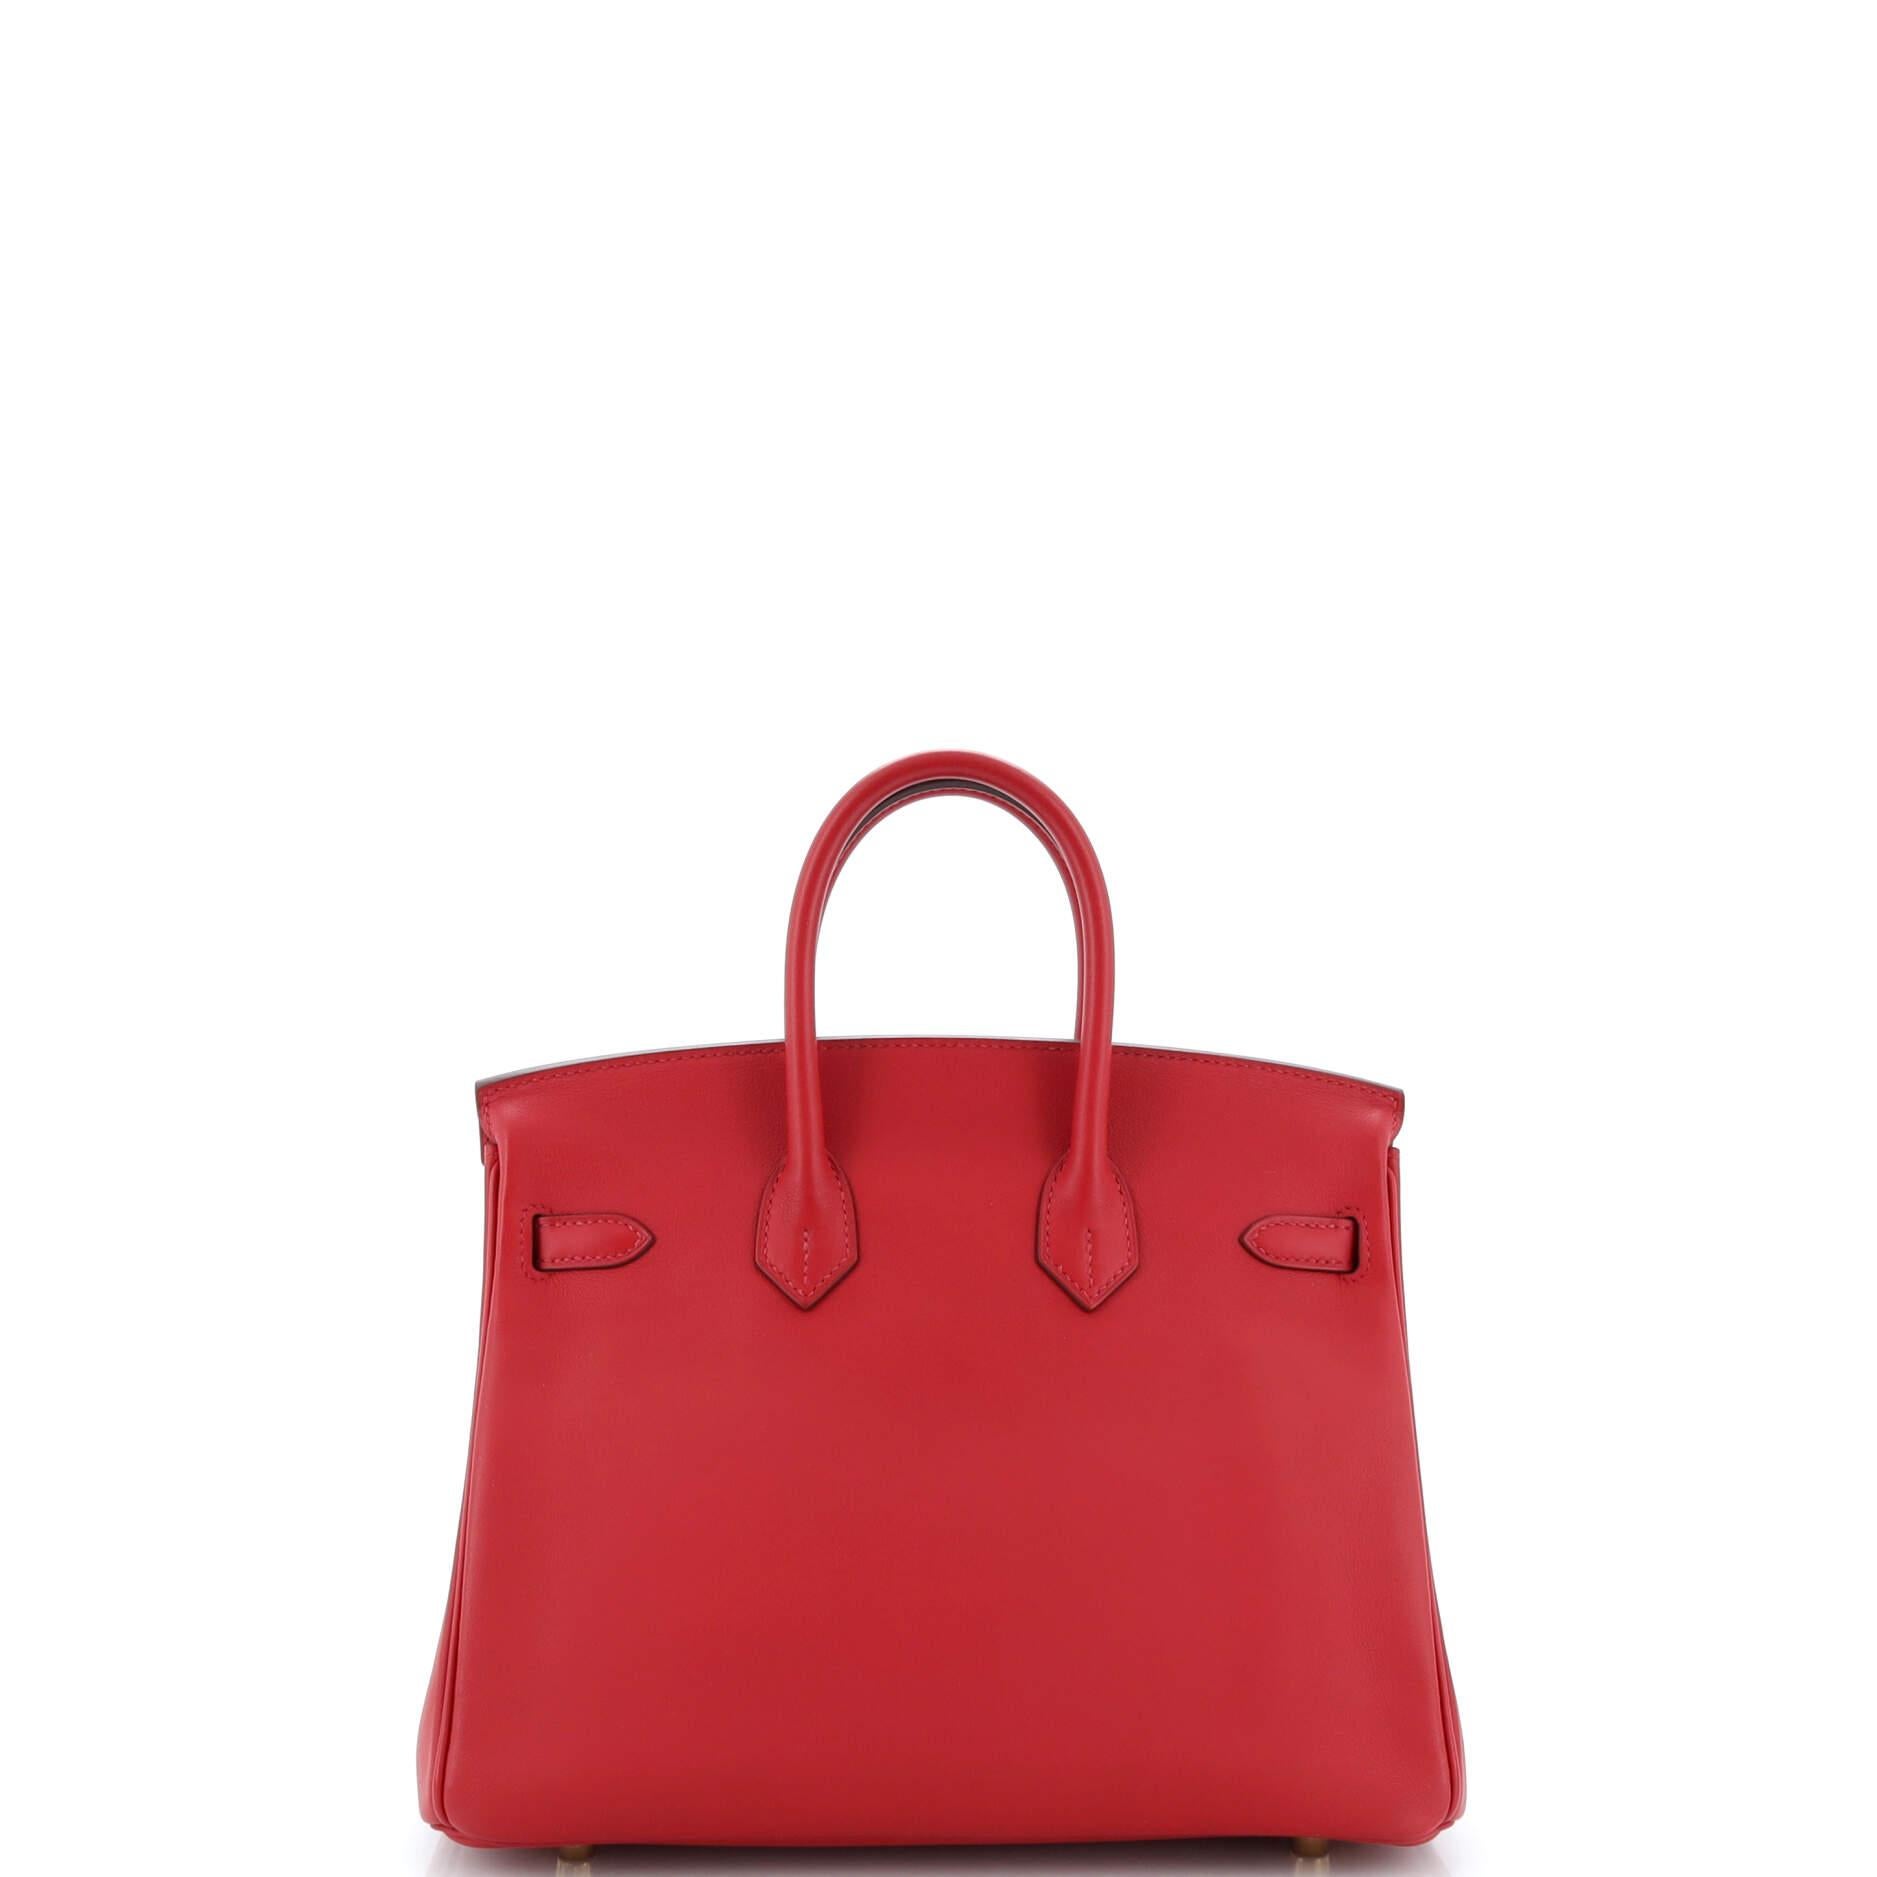 Women's or Men's Hermes Birkin Handbag Rouge Vif Swift with Gold Hardware 25